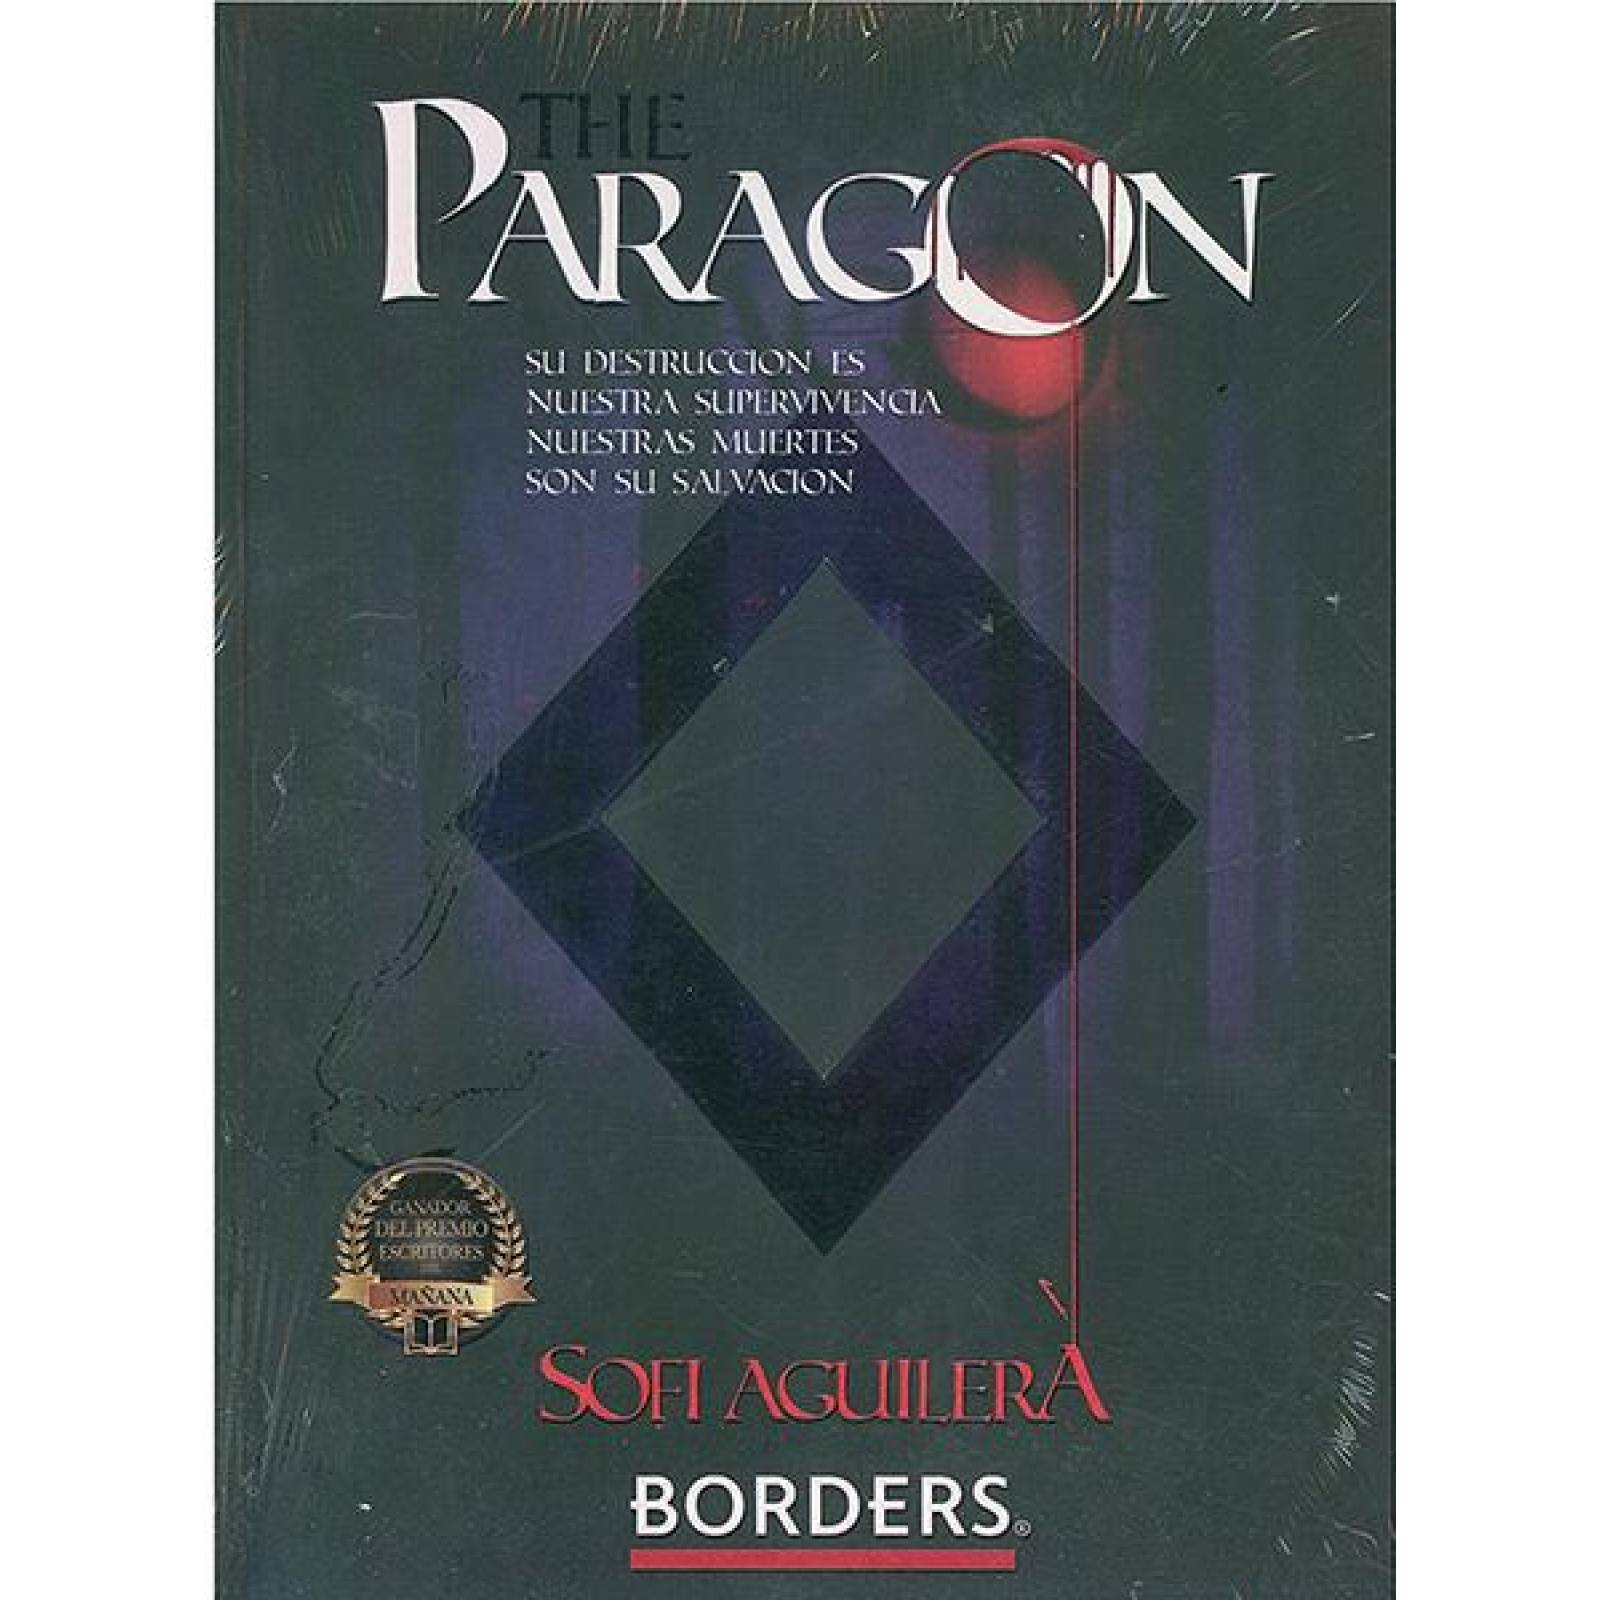 The paragon 